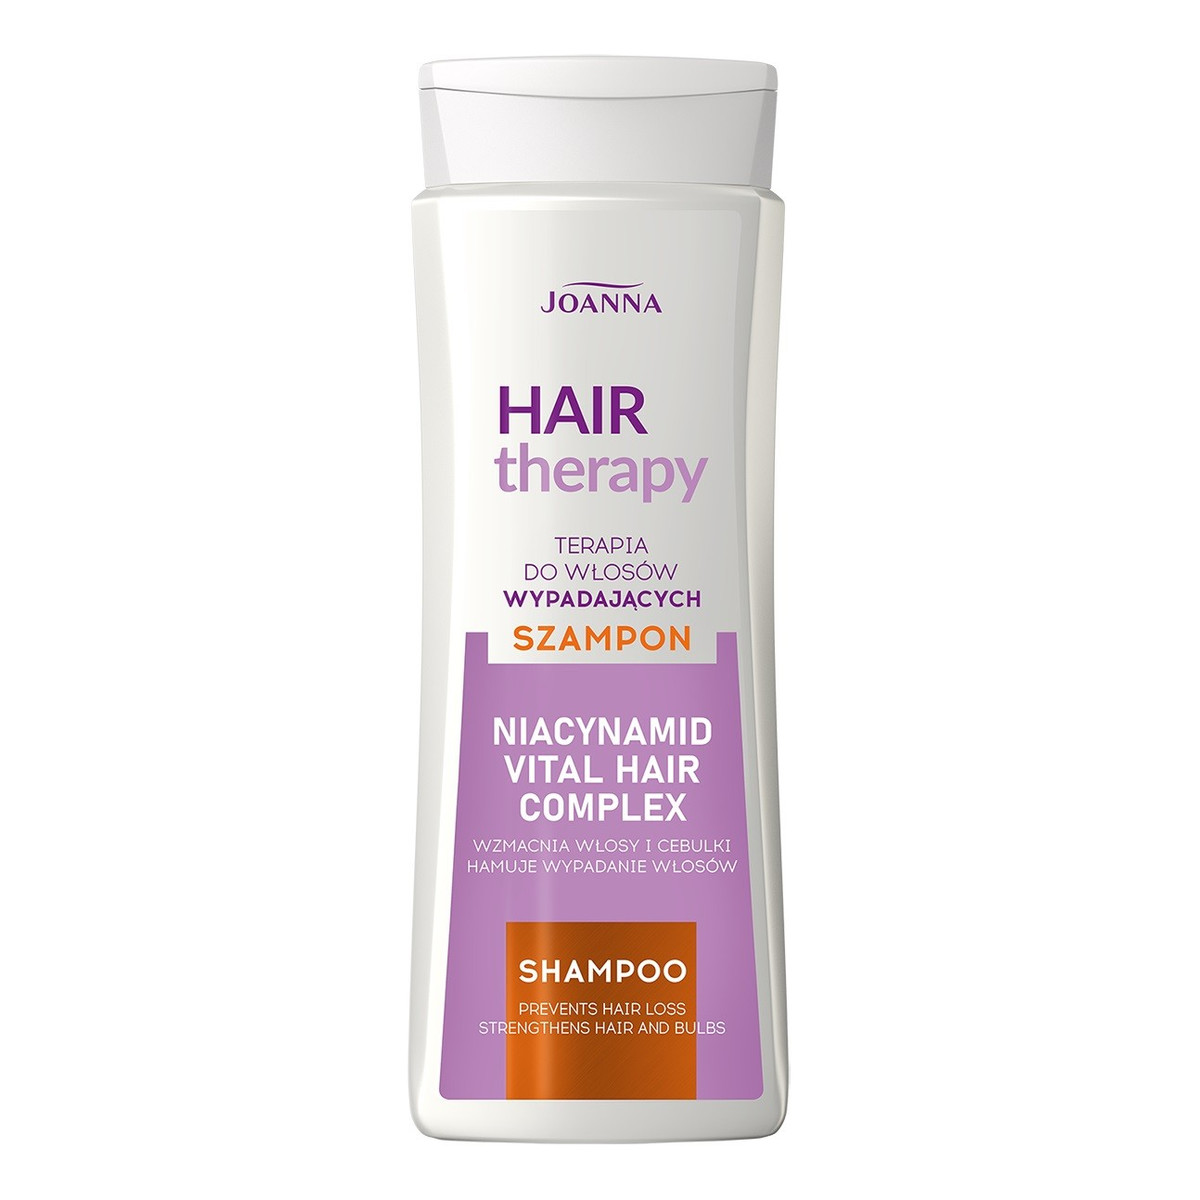 Joanna Hair therapy szampon do włosów wypadających 300ml